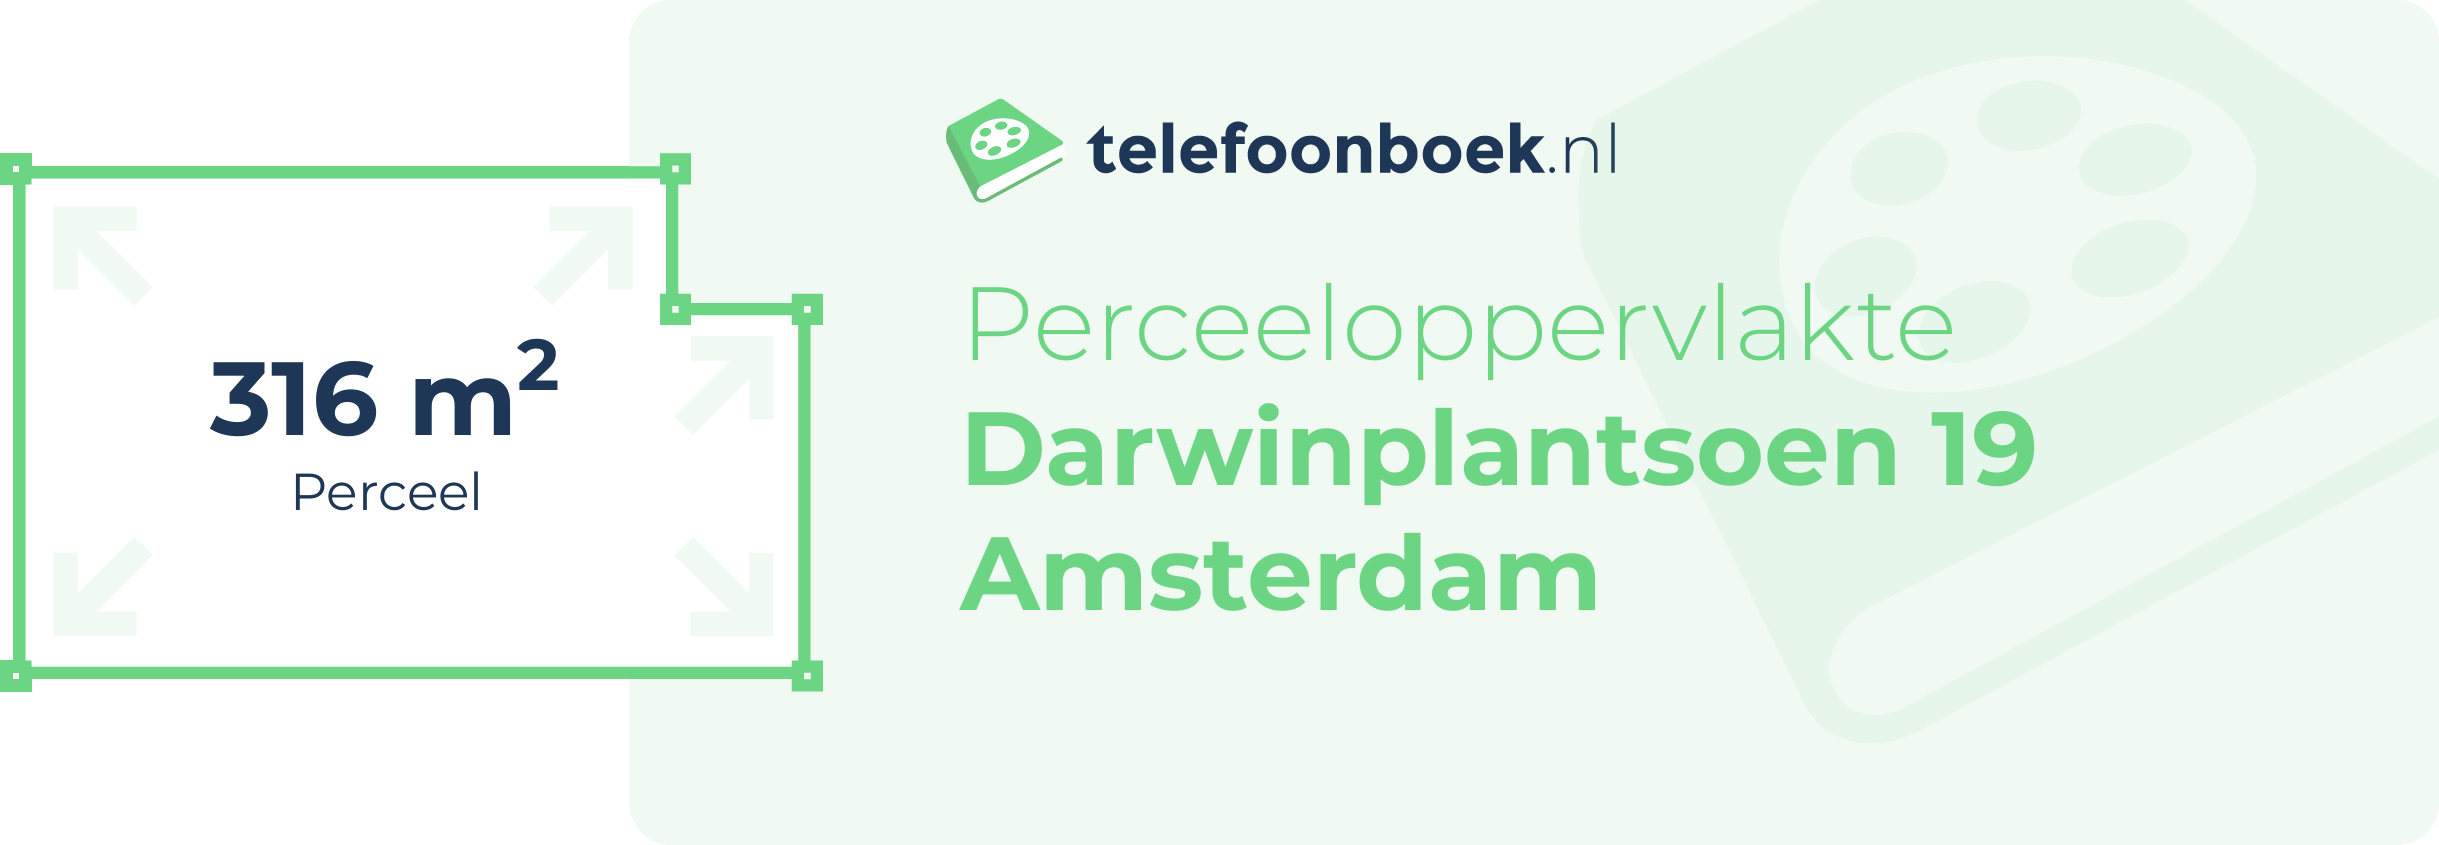 Perceeloppervlakte Darwinplantsoen 19 Amsterdam